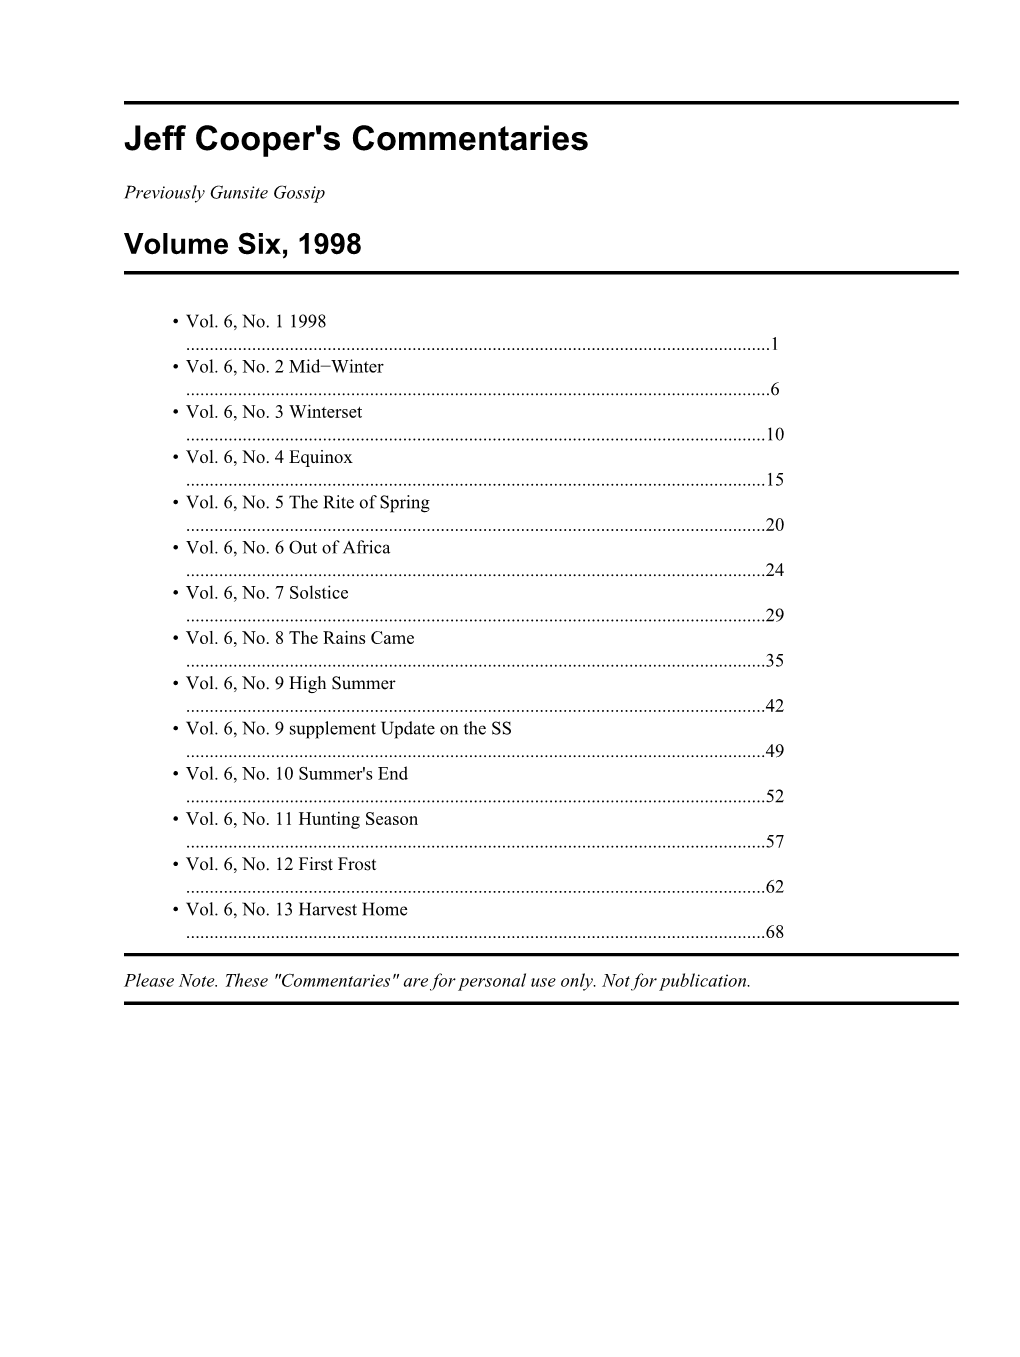 Jeff Cooper's Commentaries, Volume Six, 1998